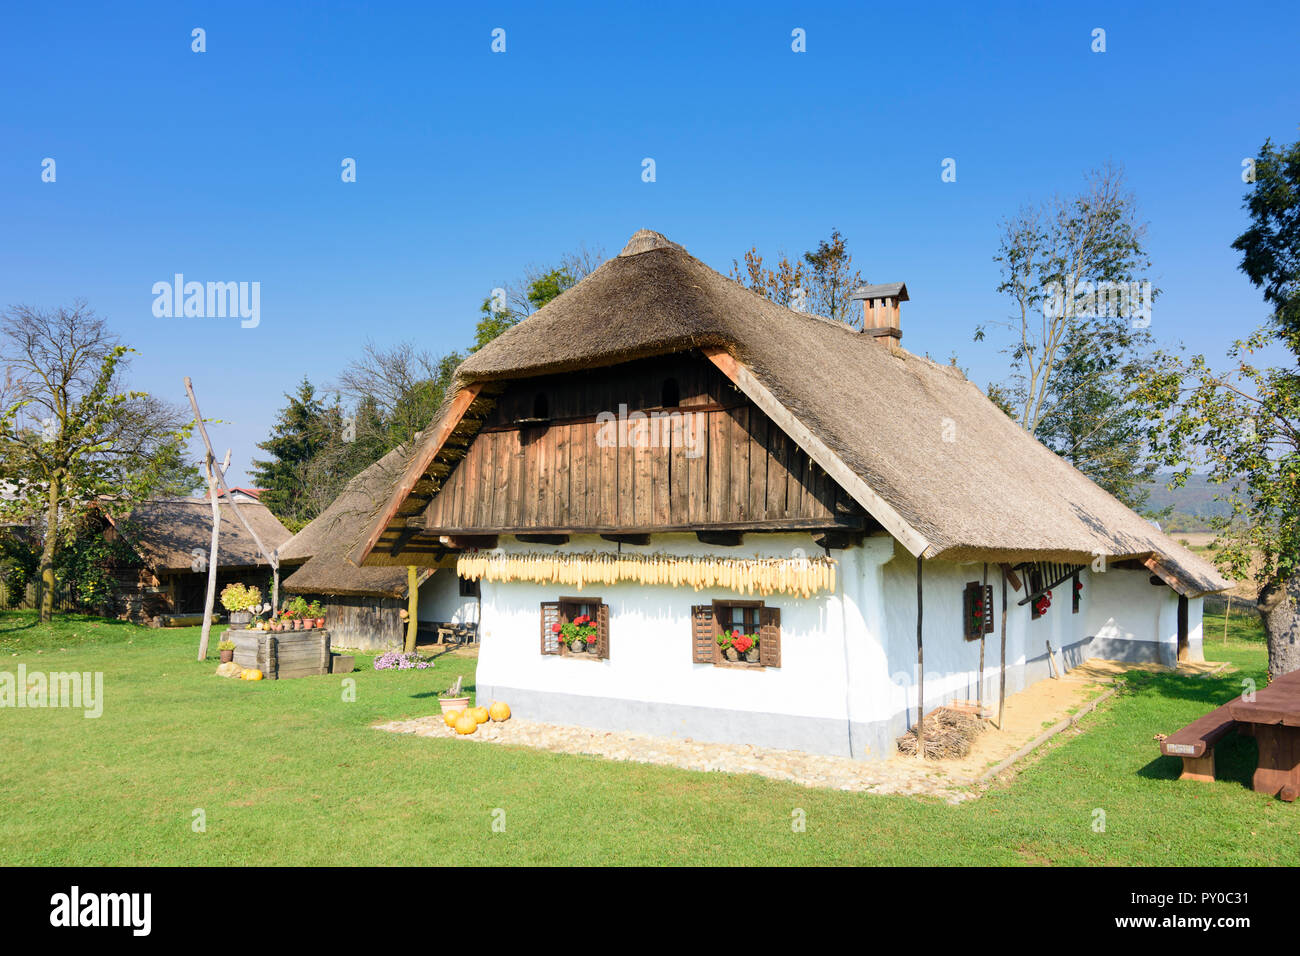 Gorisnica : musée de plein air de vieille ferme traditionnelle, toit de chaume, tirer bien dans , Stajerska (Styrie), Slovénie Banque D'Images